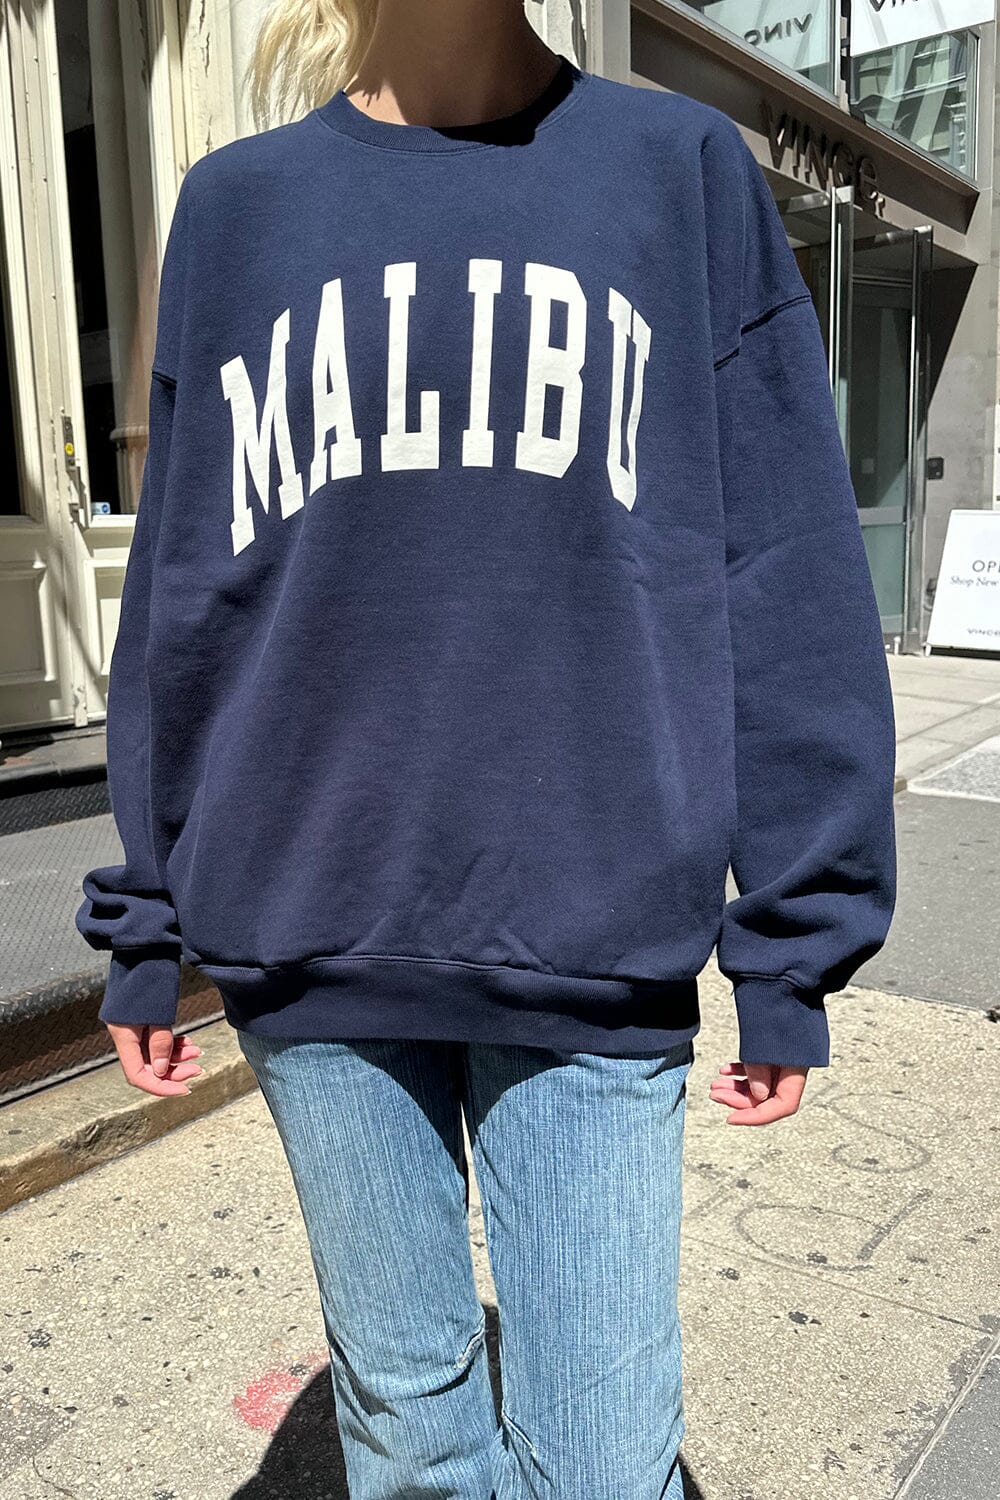 Erica Malibu Sweatshirt